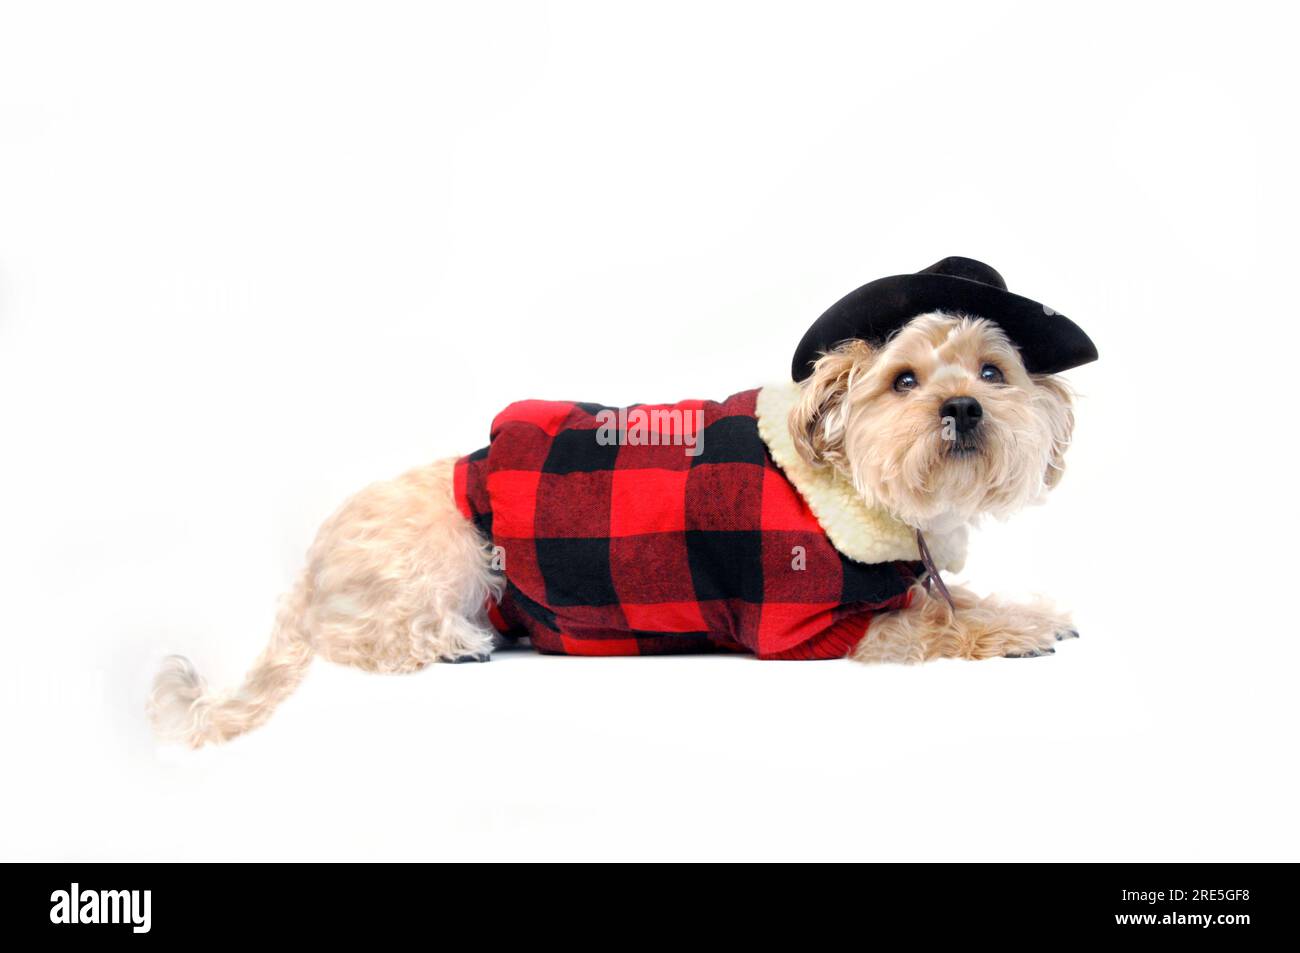 Der Hund trägt eine rot-schwarze, karierte Weste. Das Outfit besteht aus schwarzem Cowbow Heu und Kinnband. Silkypoo liegt auf einem ganz weißen Stockfoto